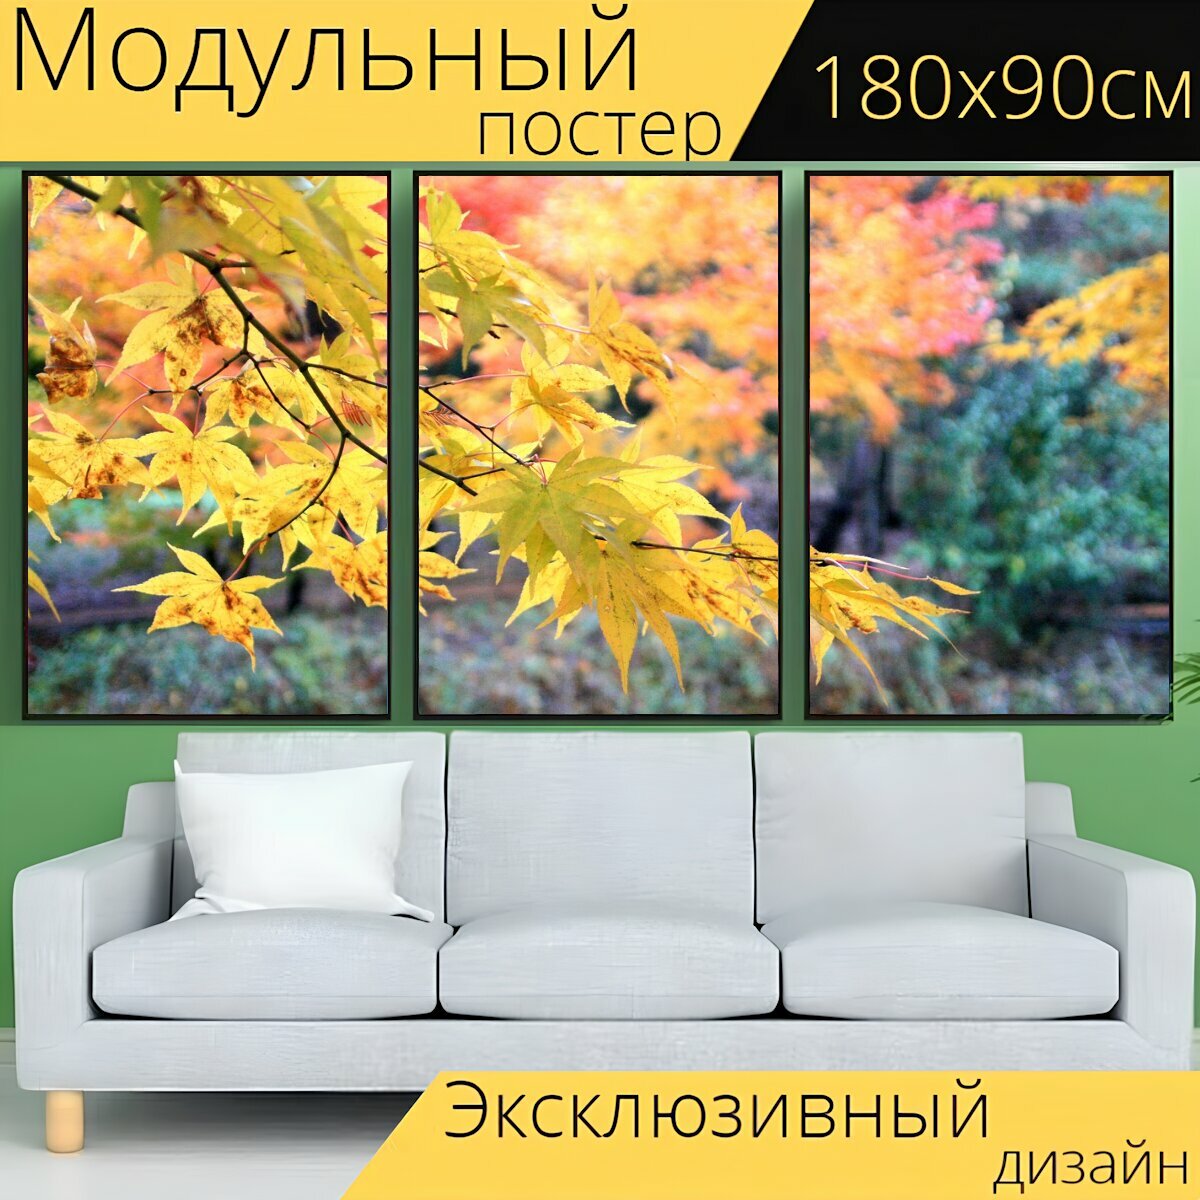 Модульный постер "Осень, осенние листья, листья" 180 x 90 см. для интерьера